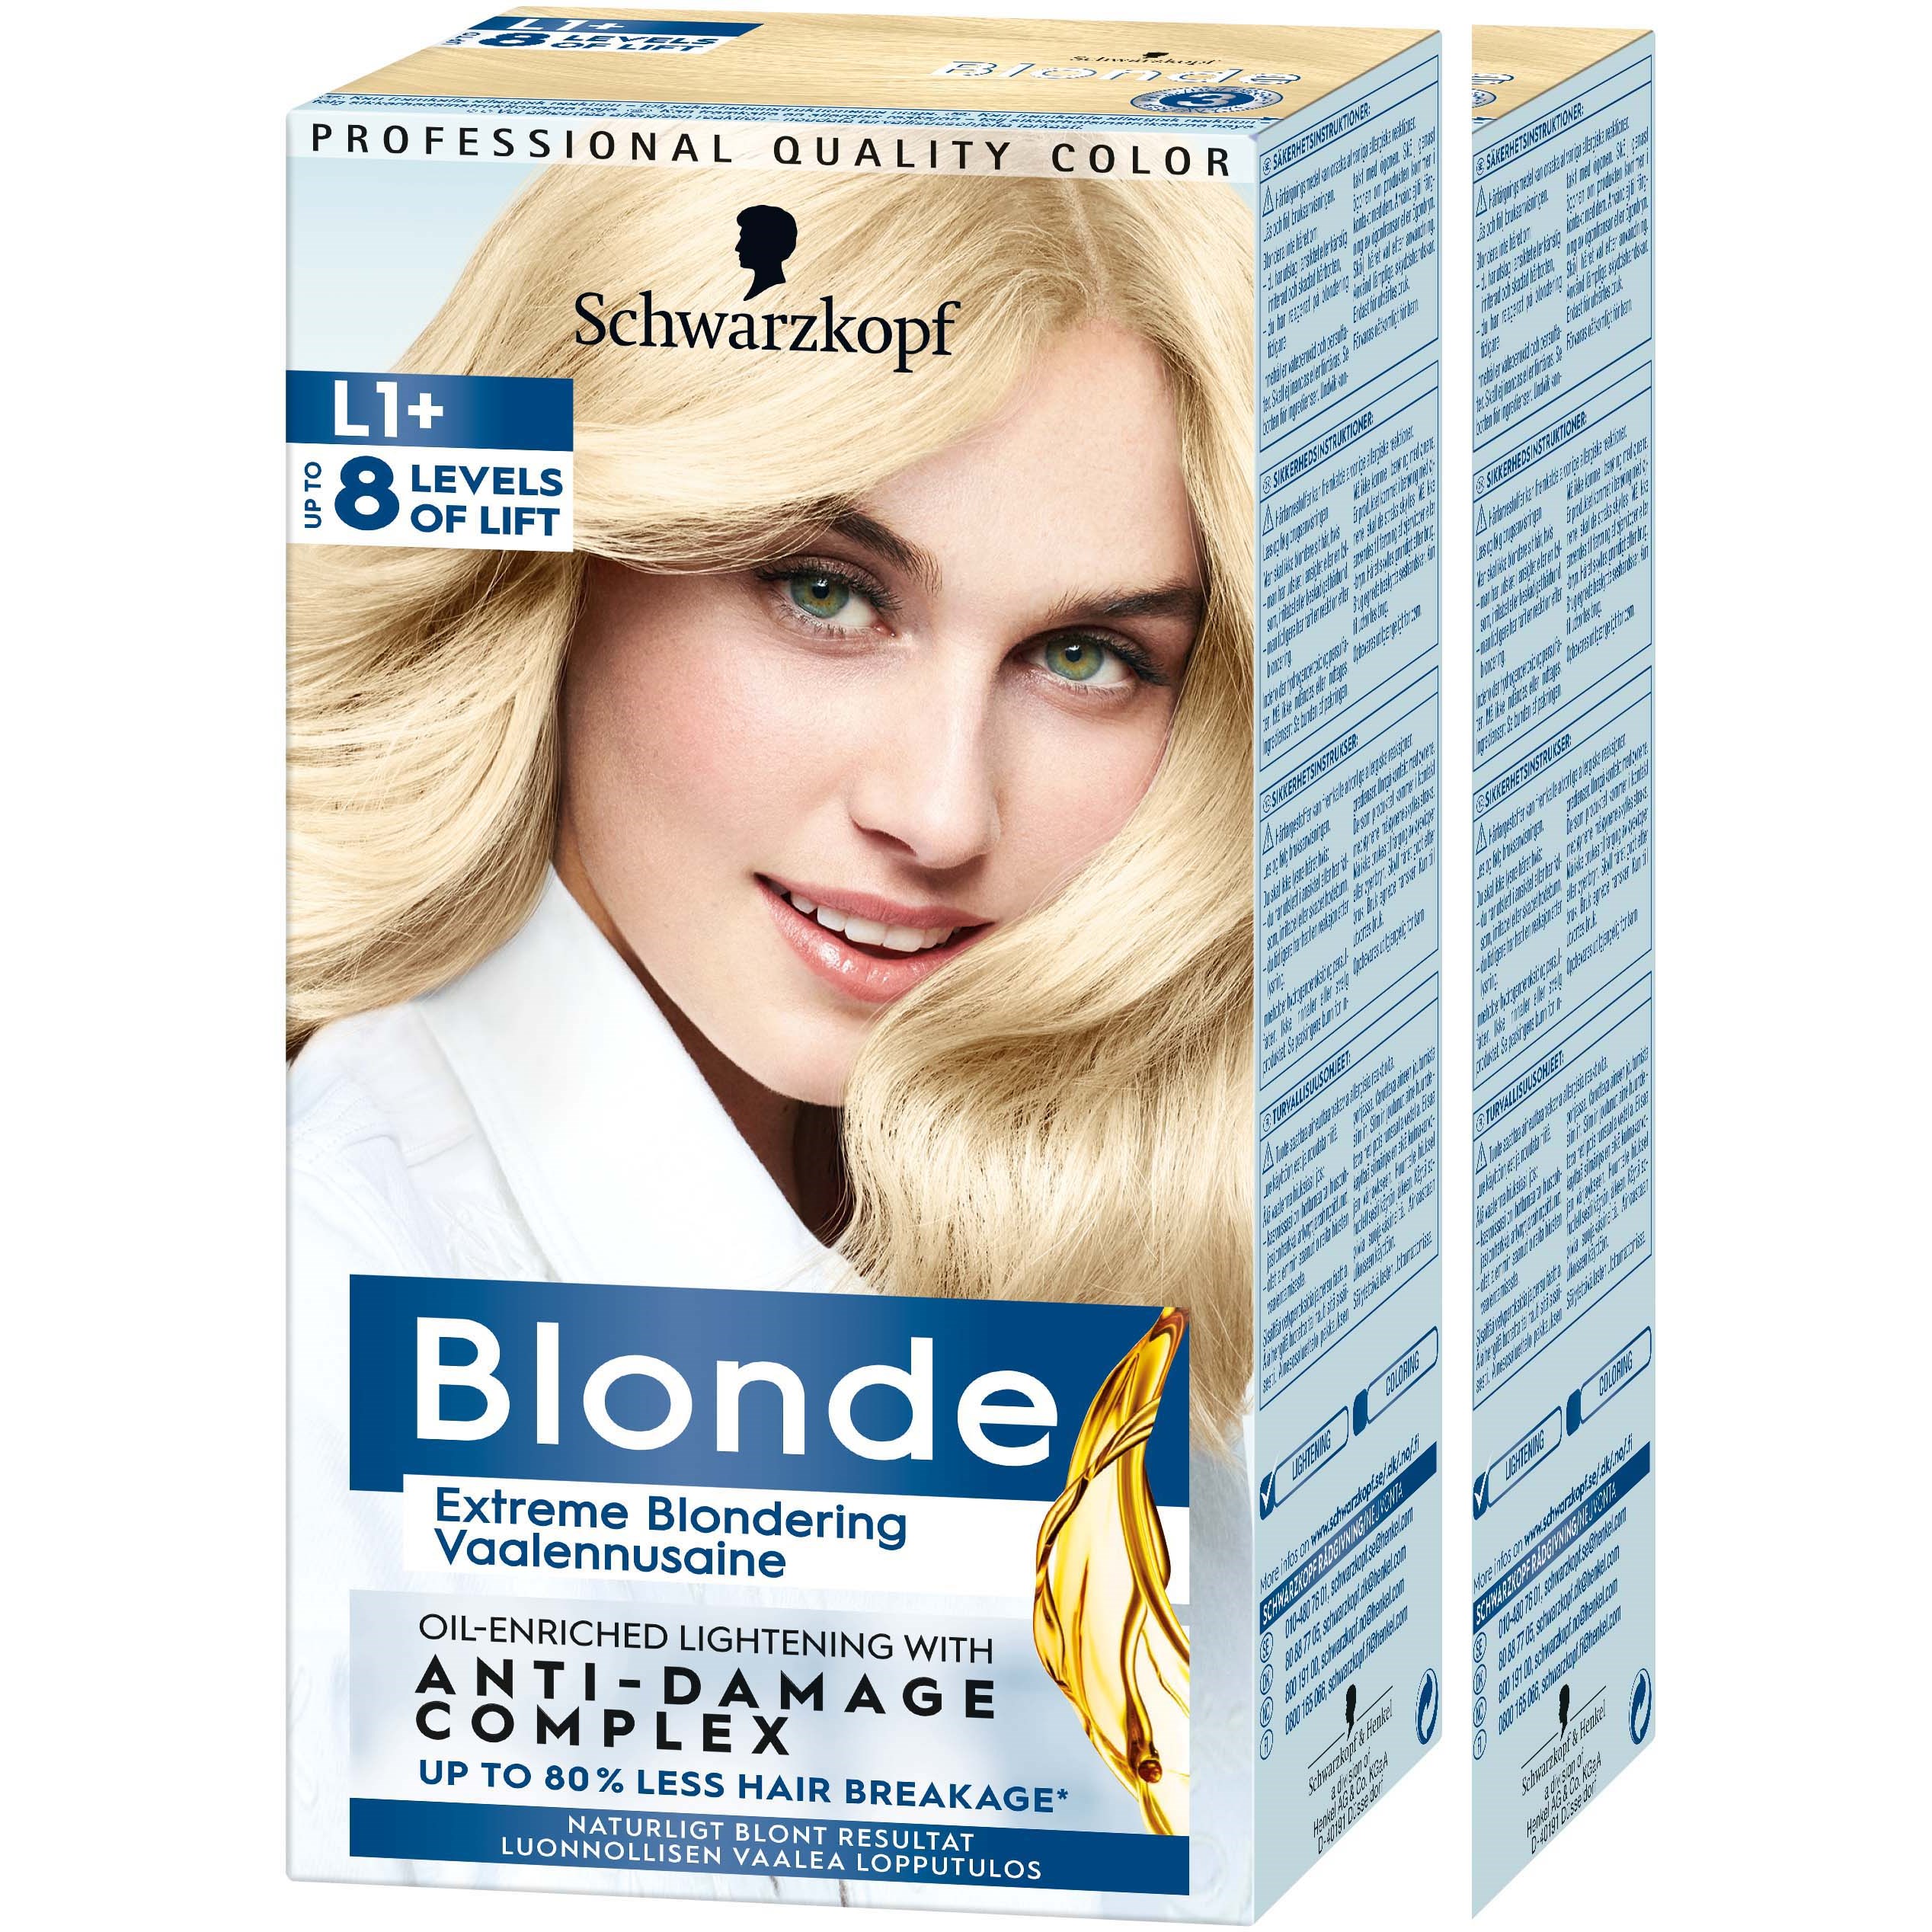 Läs mer om Schwarzkopf Blonde L1+ Blondering-2 pack